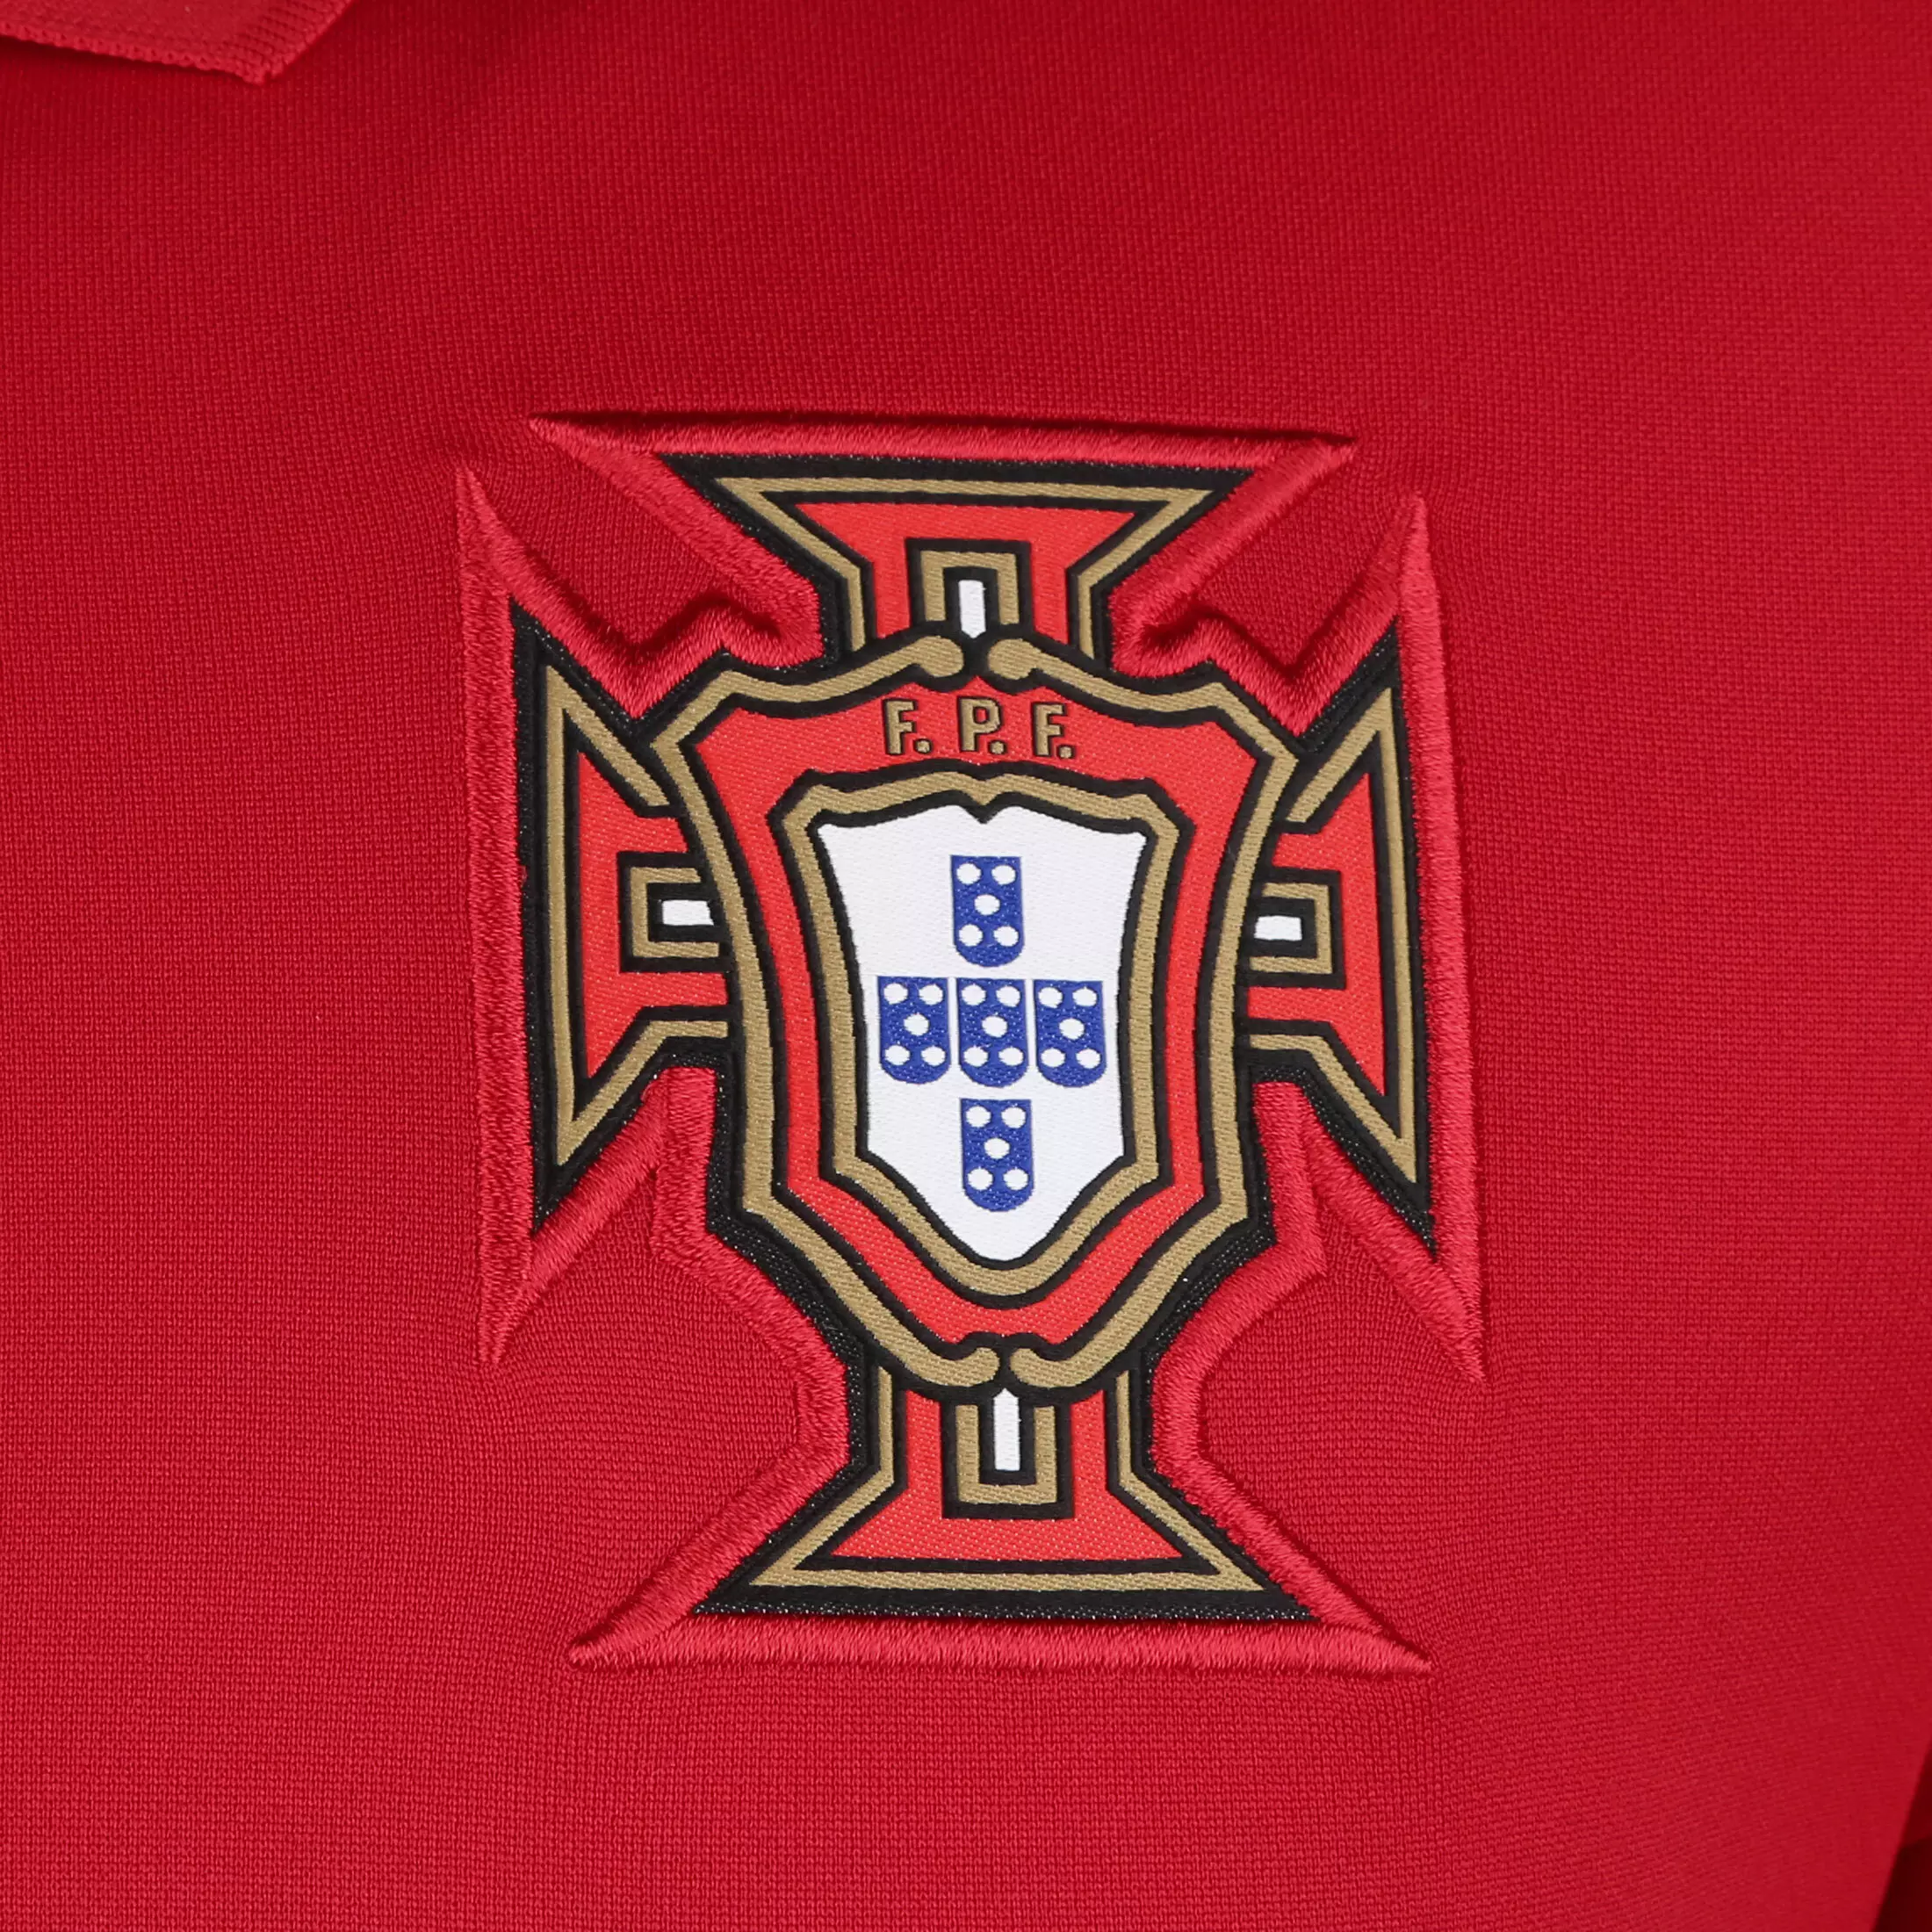 Nike Portugal 2021 Heim Trikot Herren Gym Red Metallic Gold Im Online Shop Von Sportscheck Kaufen